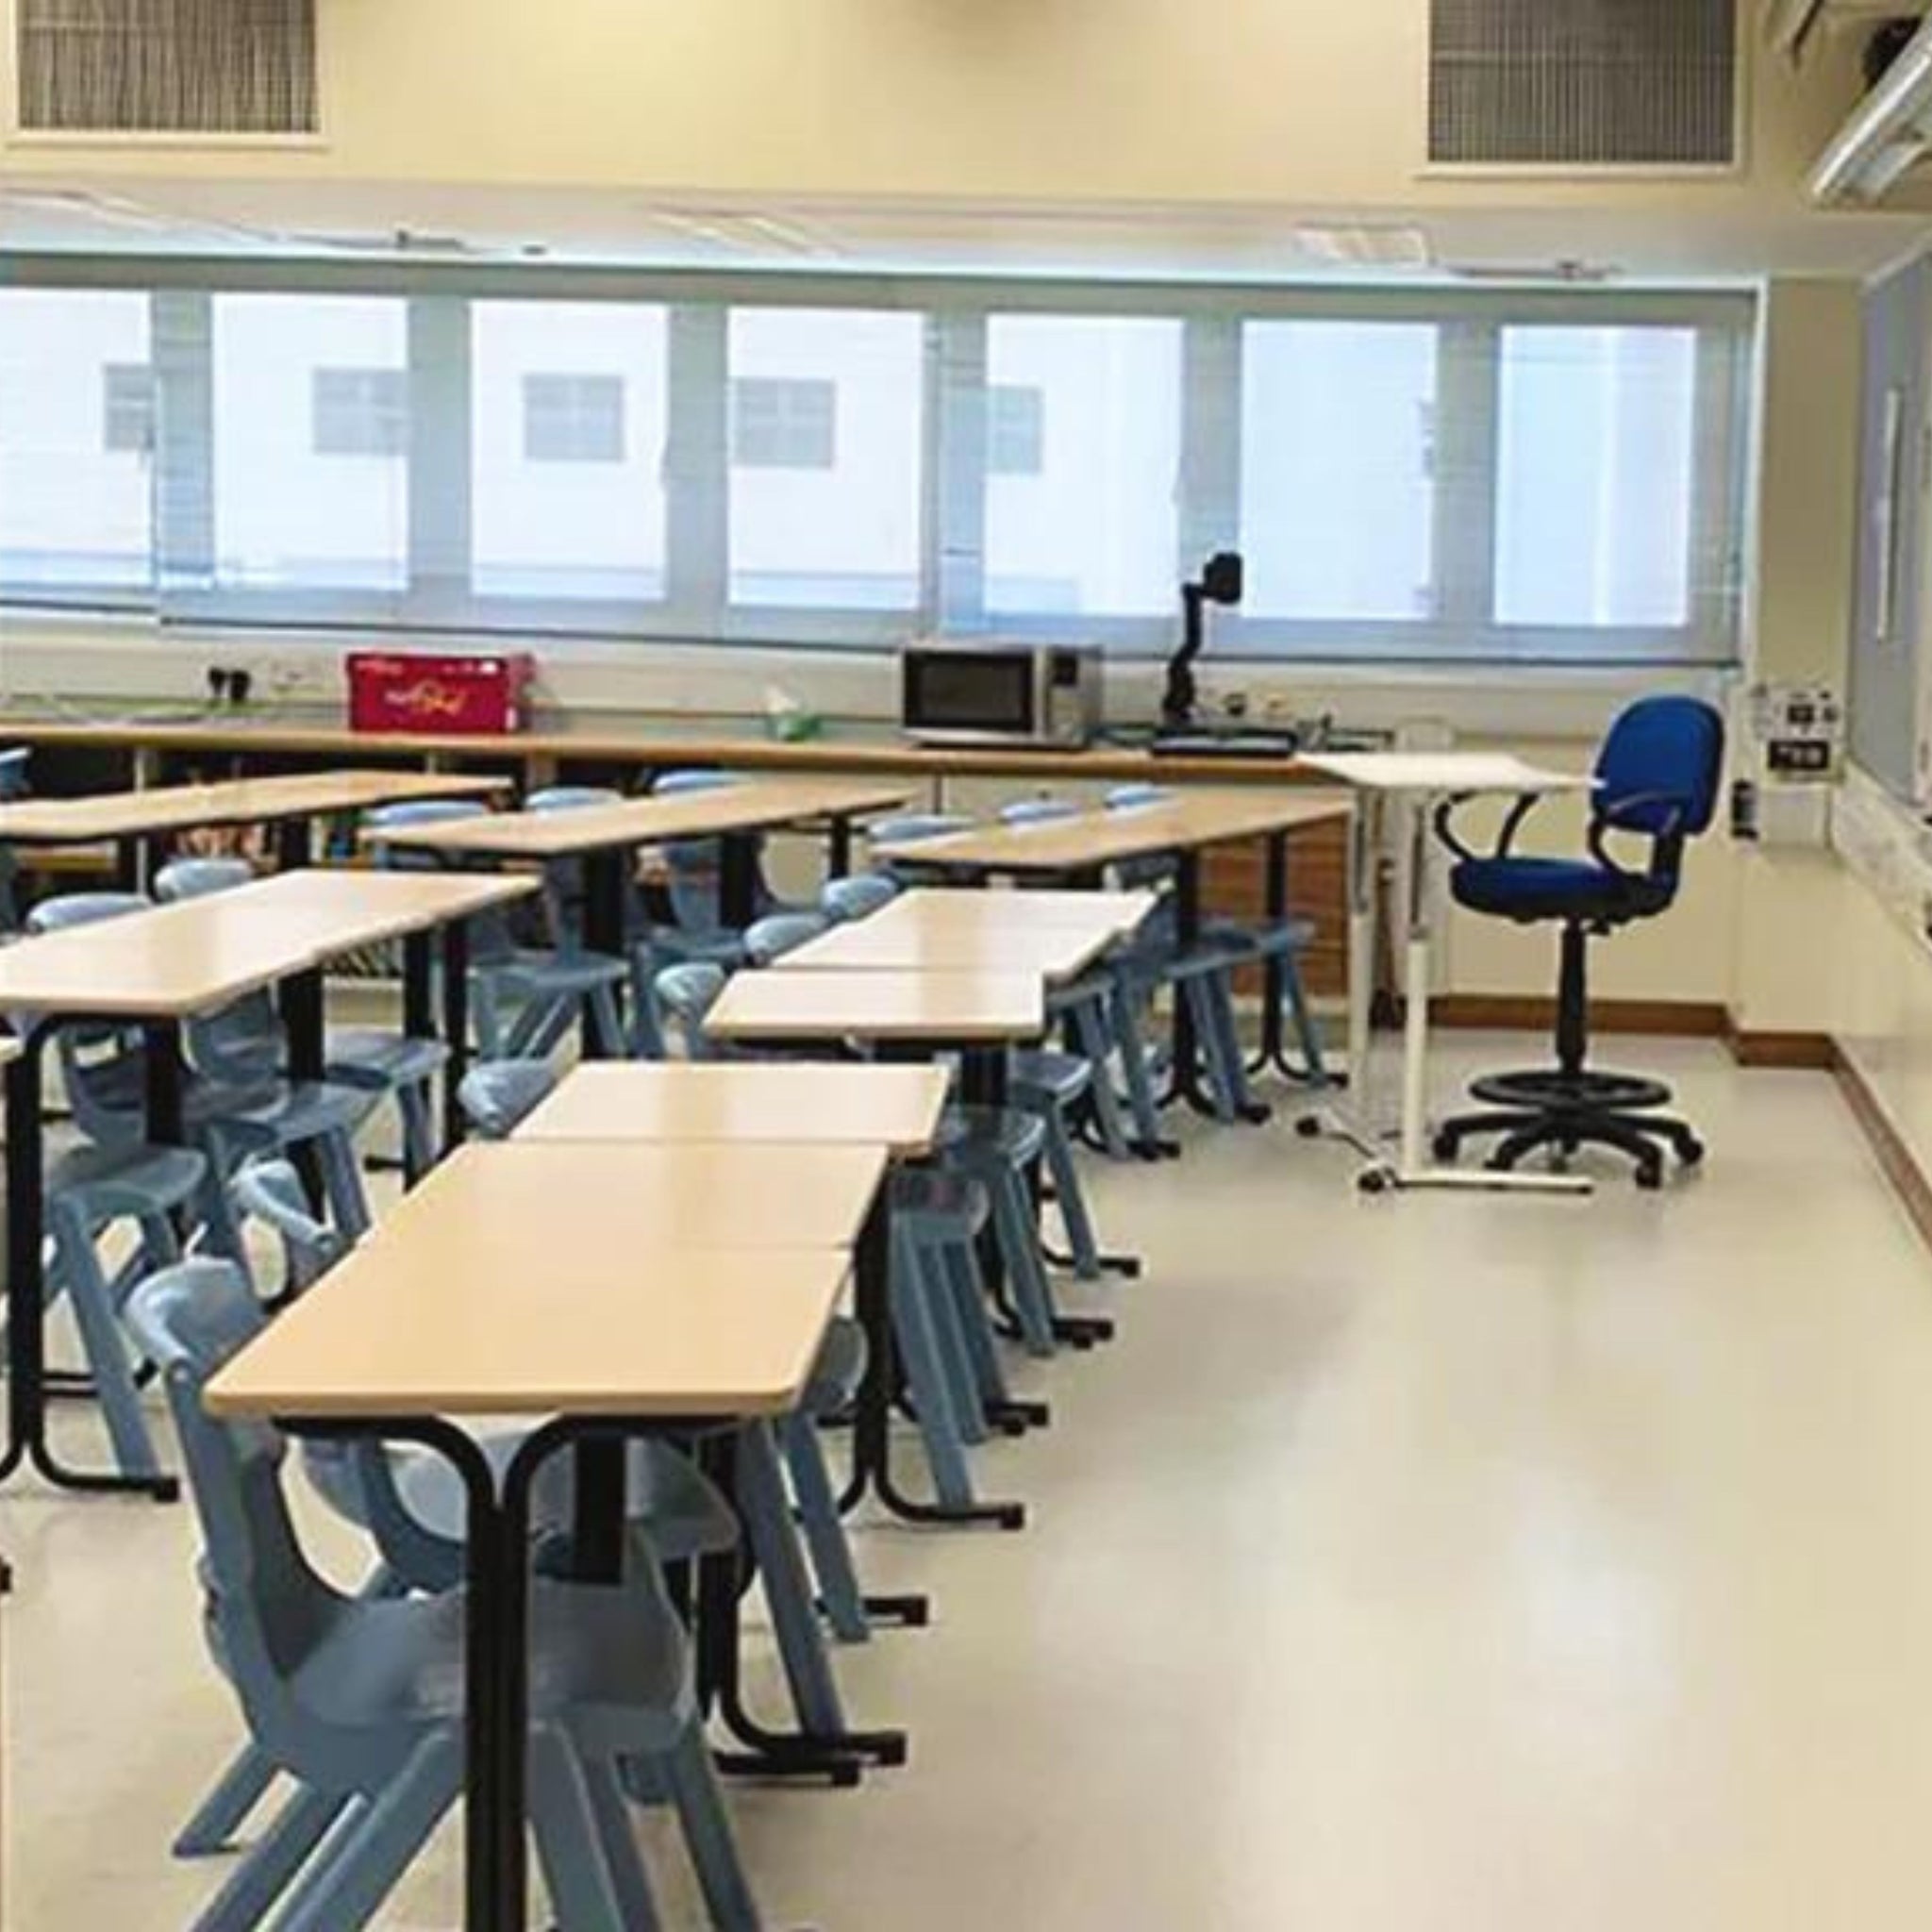 基督教國際學校 教室桌椅組合批量訂購 - IFCO Hong Kong